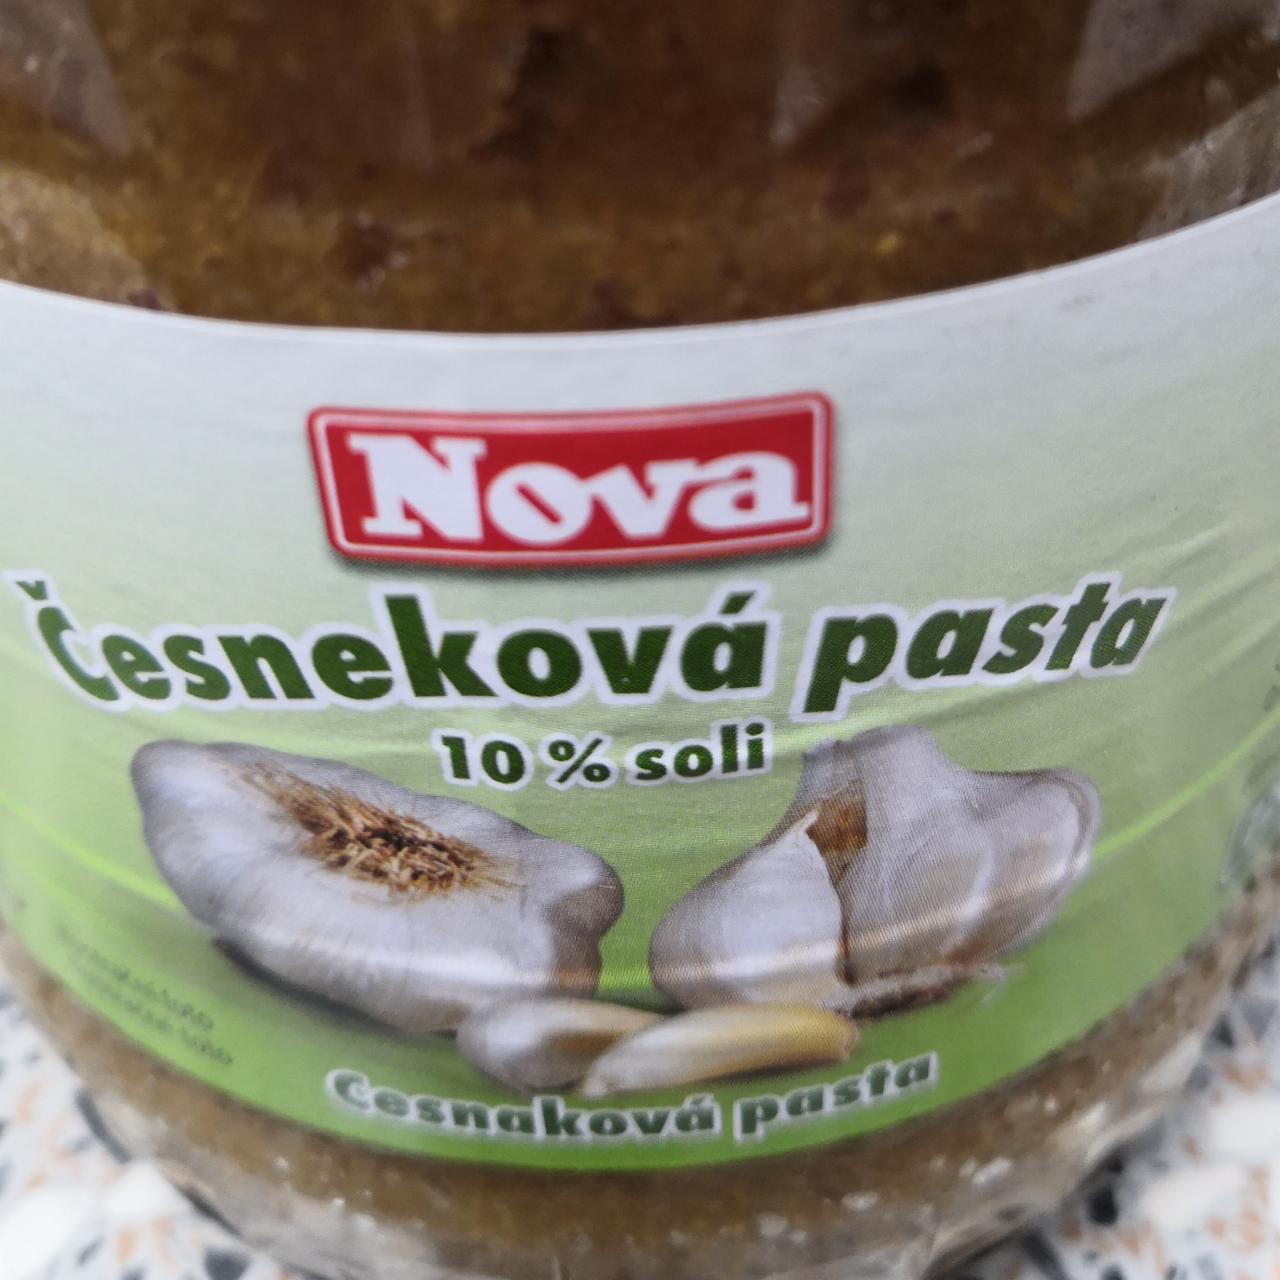 Fotografie - Cesnaková pasta 10% soli Nova